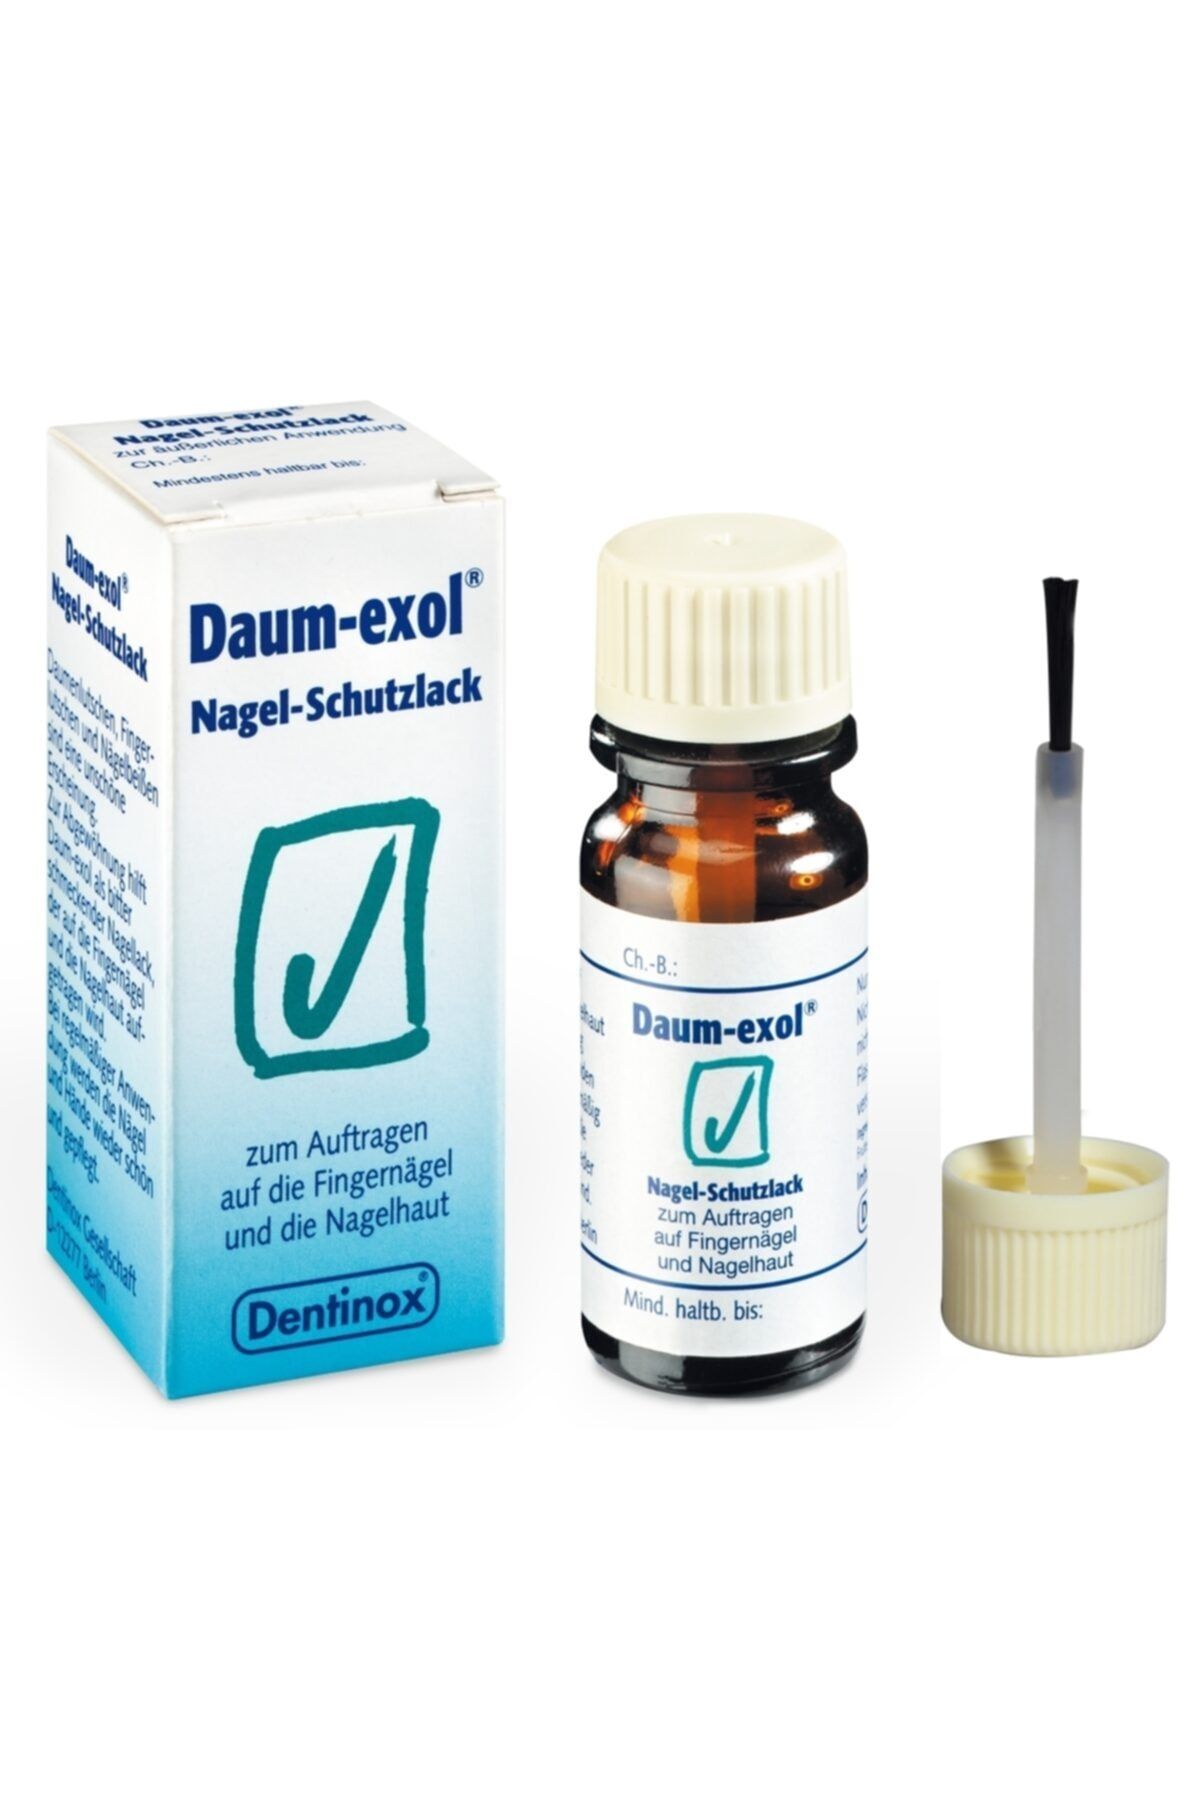 Dentinox Daum-Exol Tırnak Koruma Cilası ( Parmak Emme  Tırnak Yeme Önleyici Oje )